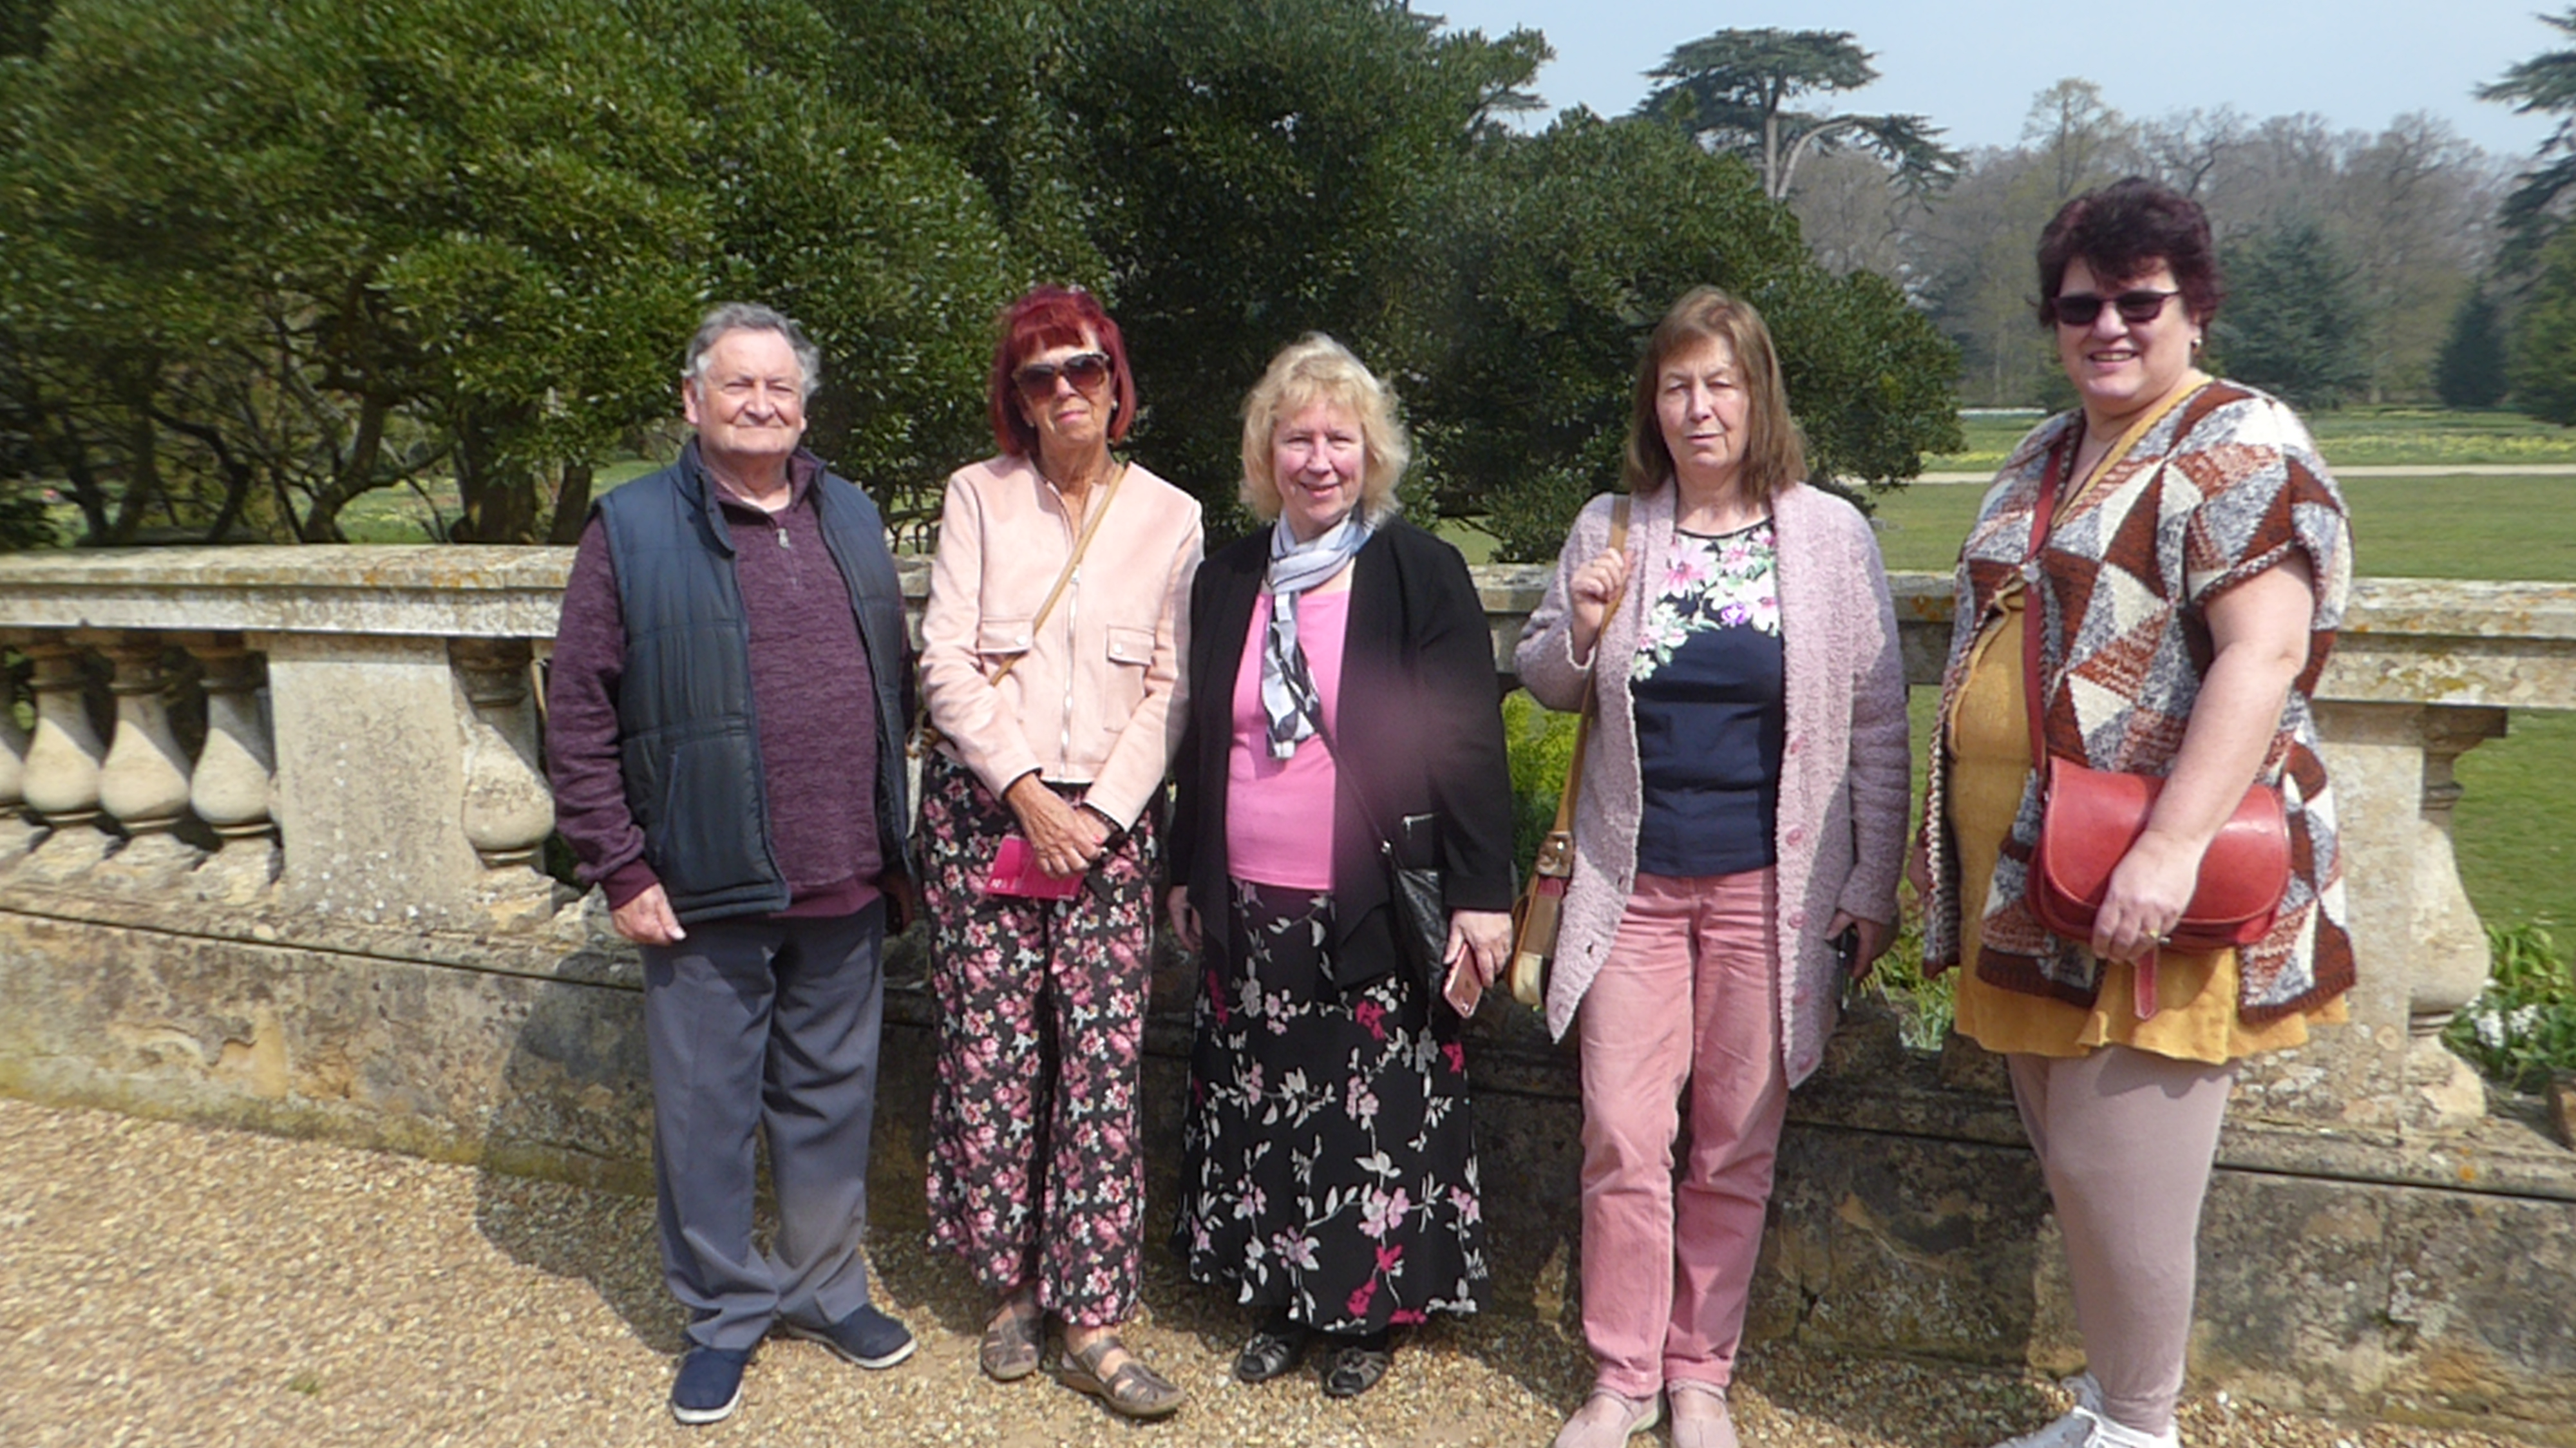 Alan, Sandie, Angela, Karen (now Swaffham) and Robyn